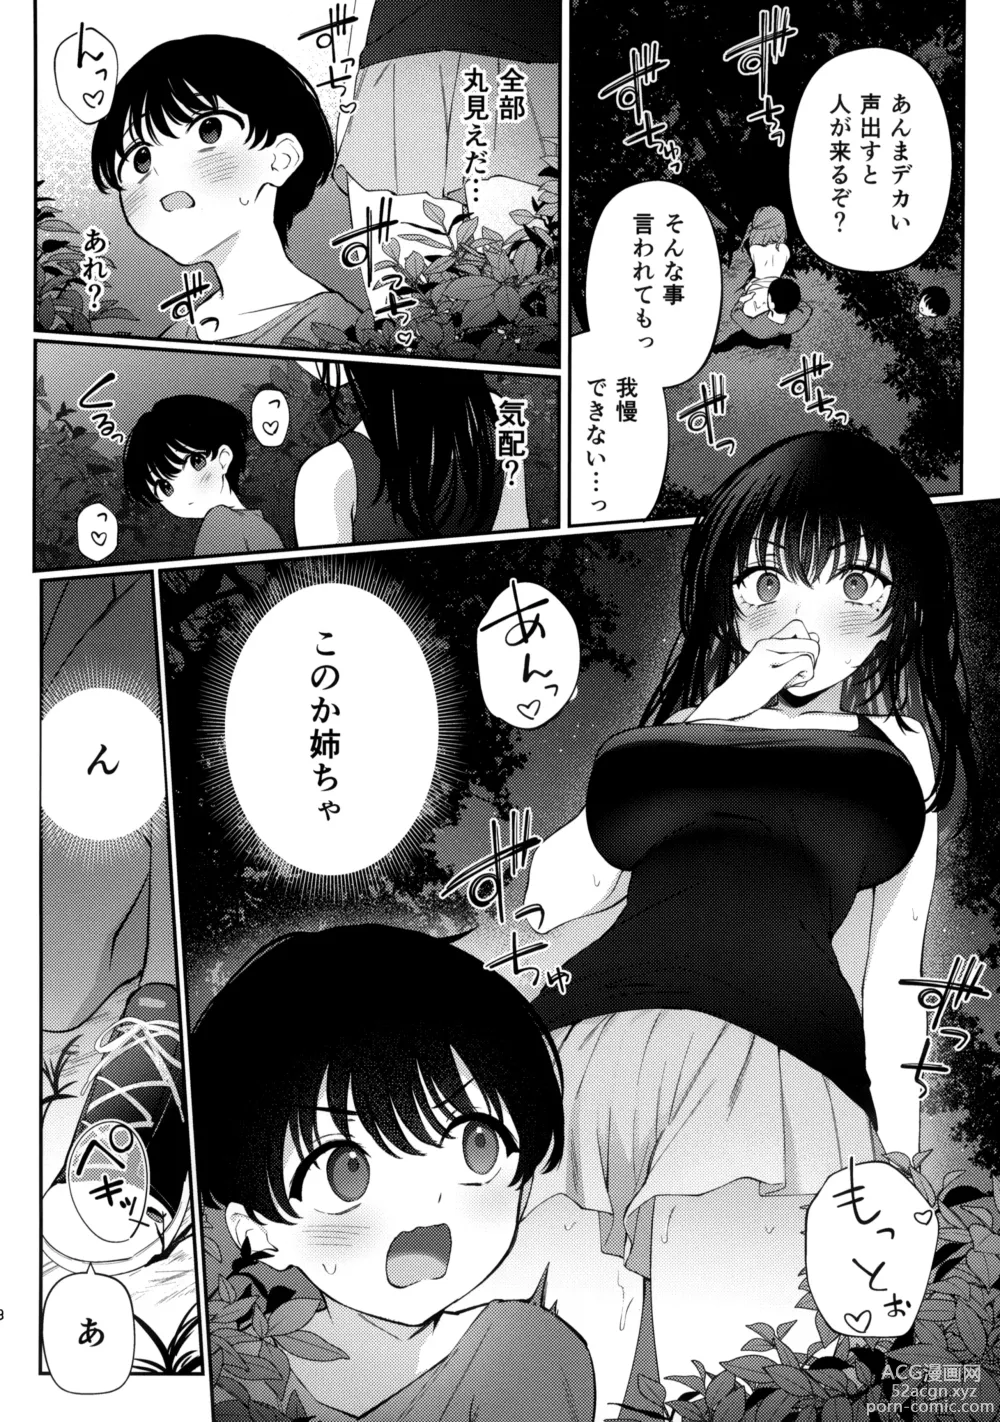 Page 7 of doujinshi Boku no Natsuyasumi no Omoide